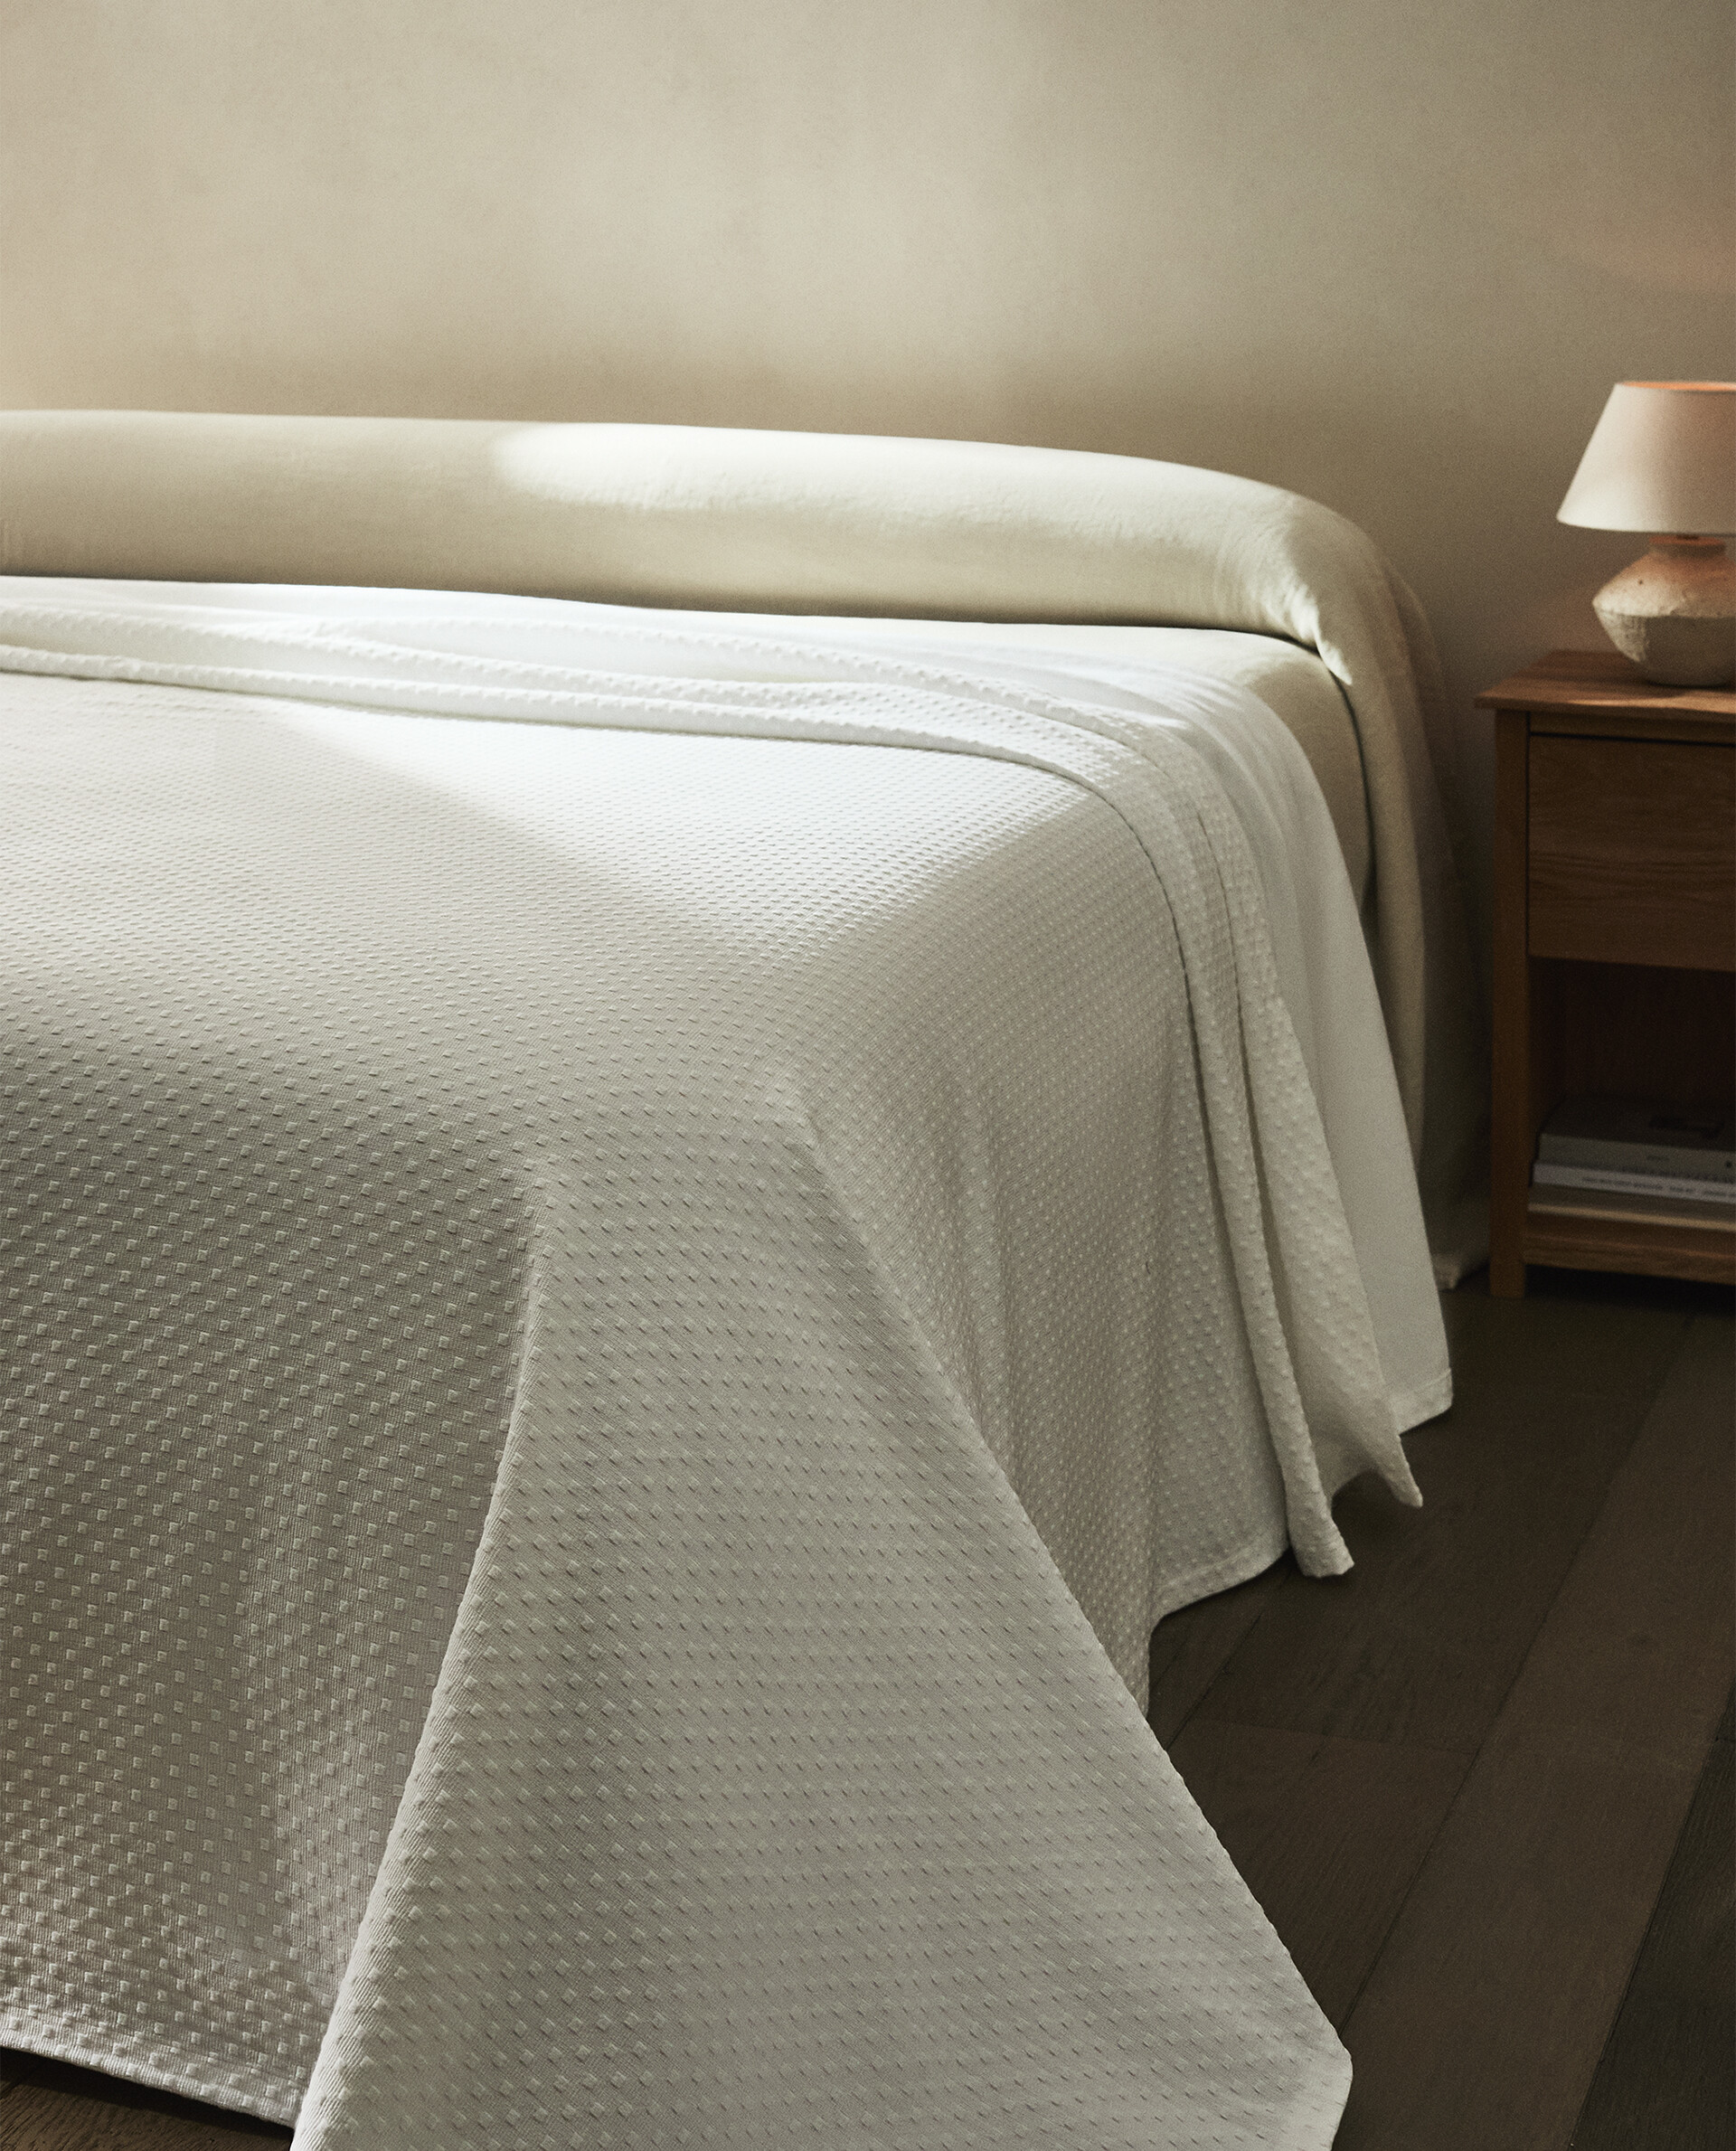 Prepara tu dormitorio para el buen tiempo con estas colchas de Zara Home